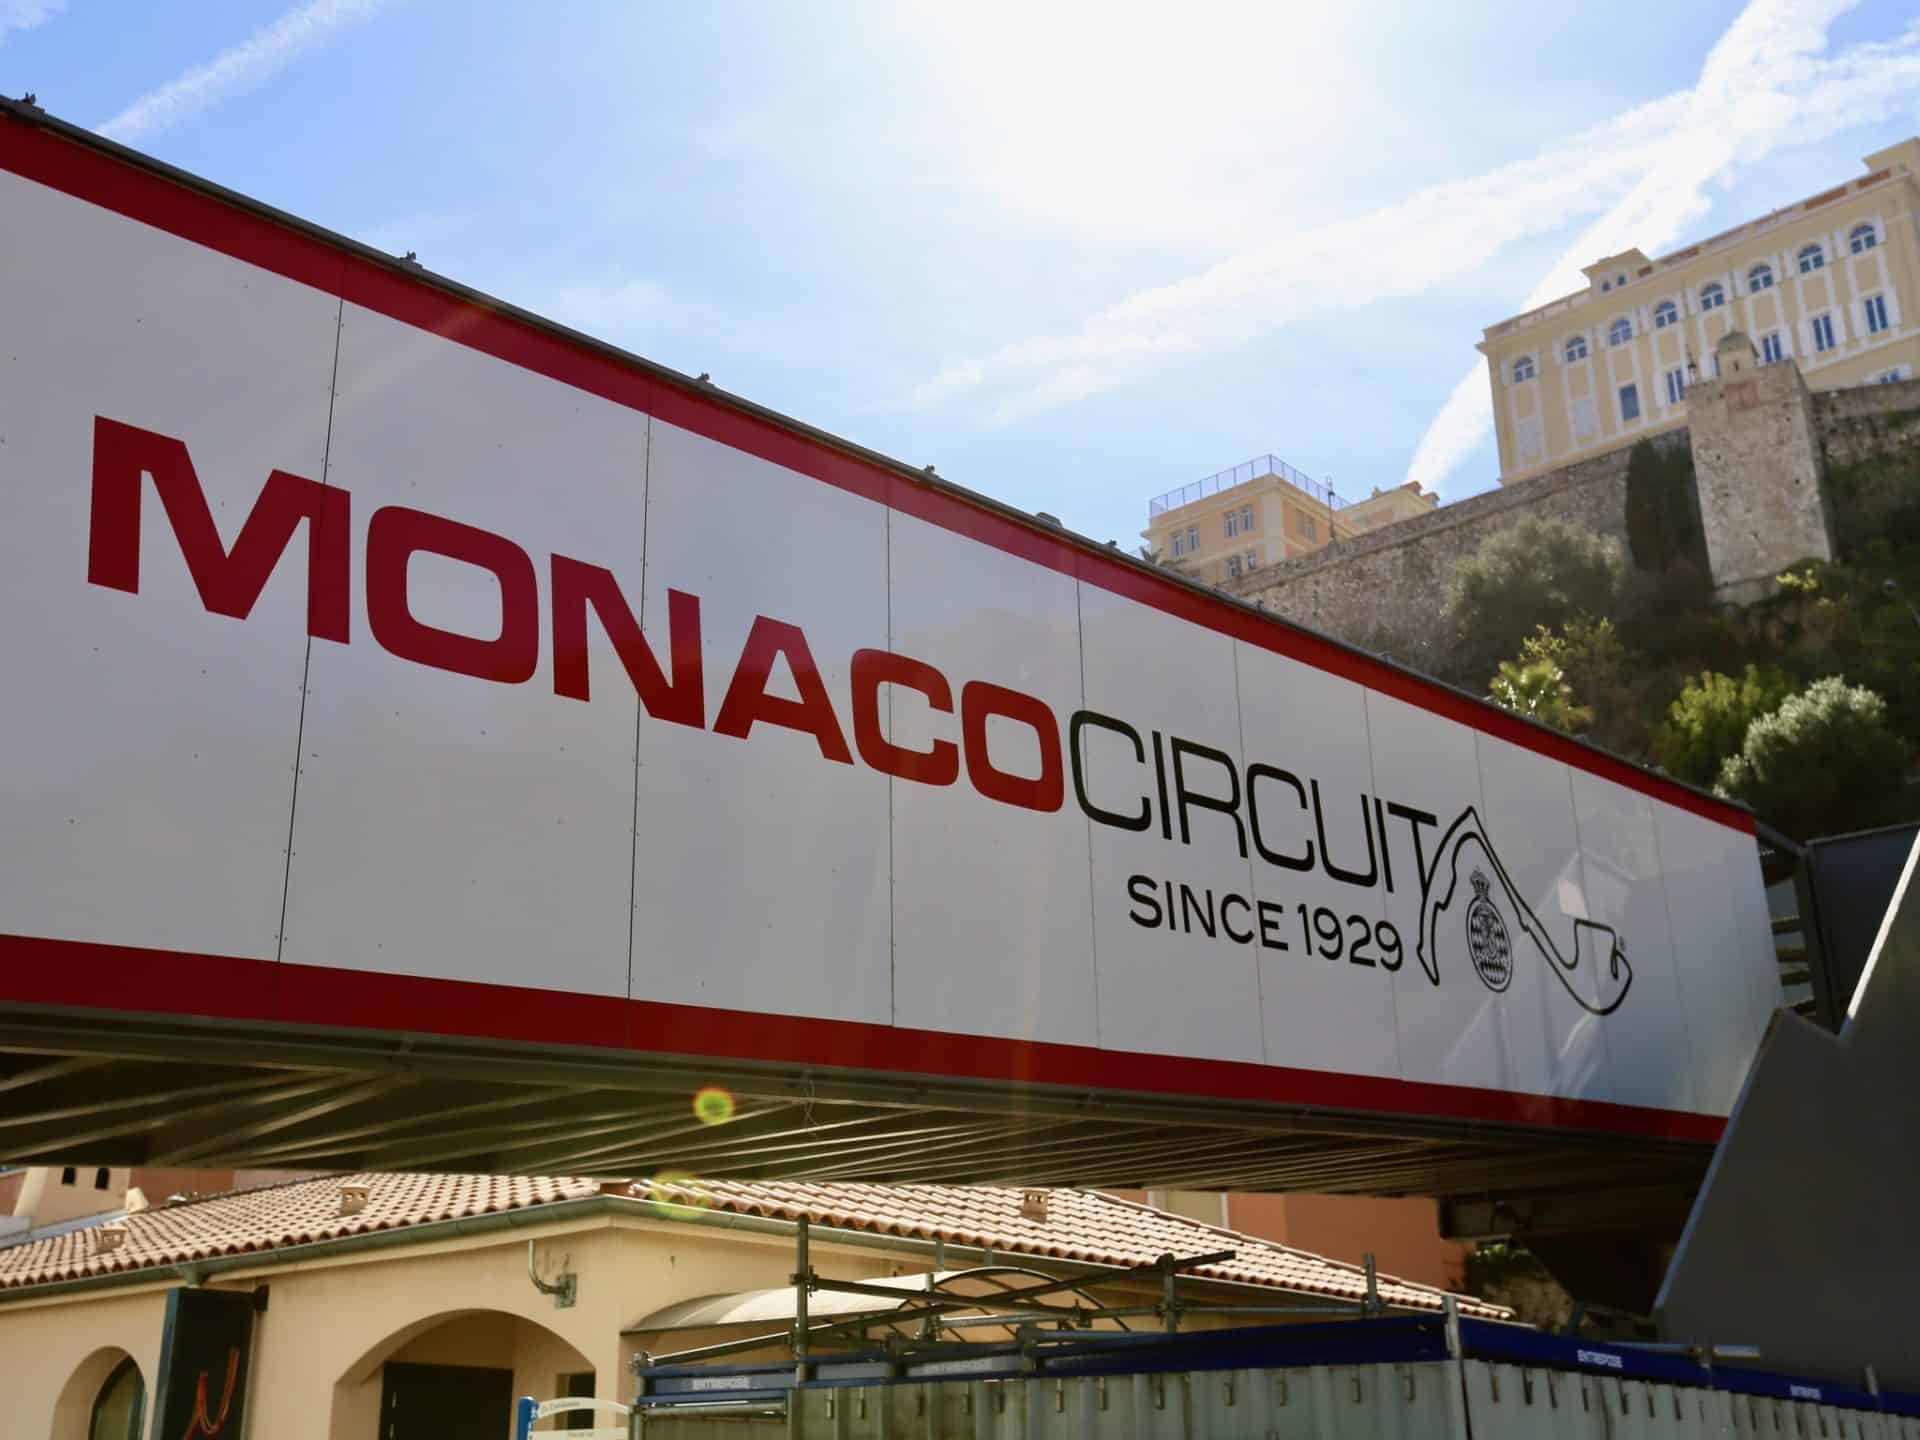 El emblema del circuito del Gran Premio de Fórmula 1 de Mónaco. Foto a través del Automóvil Club de Mónaco.